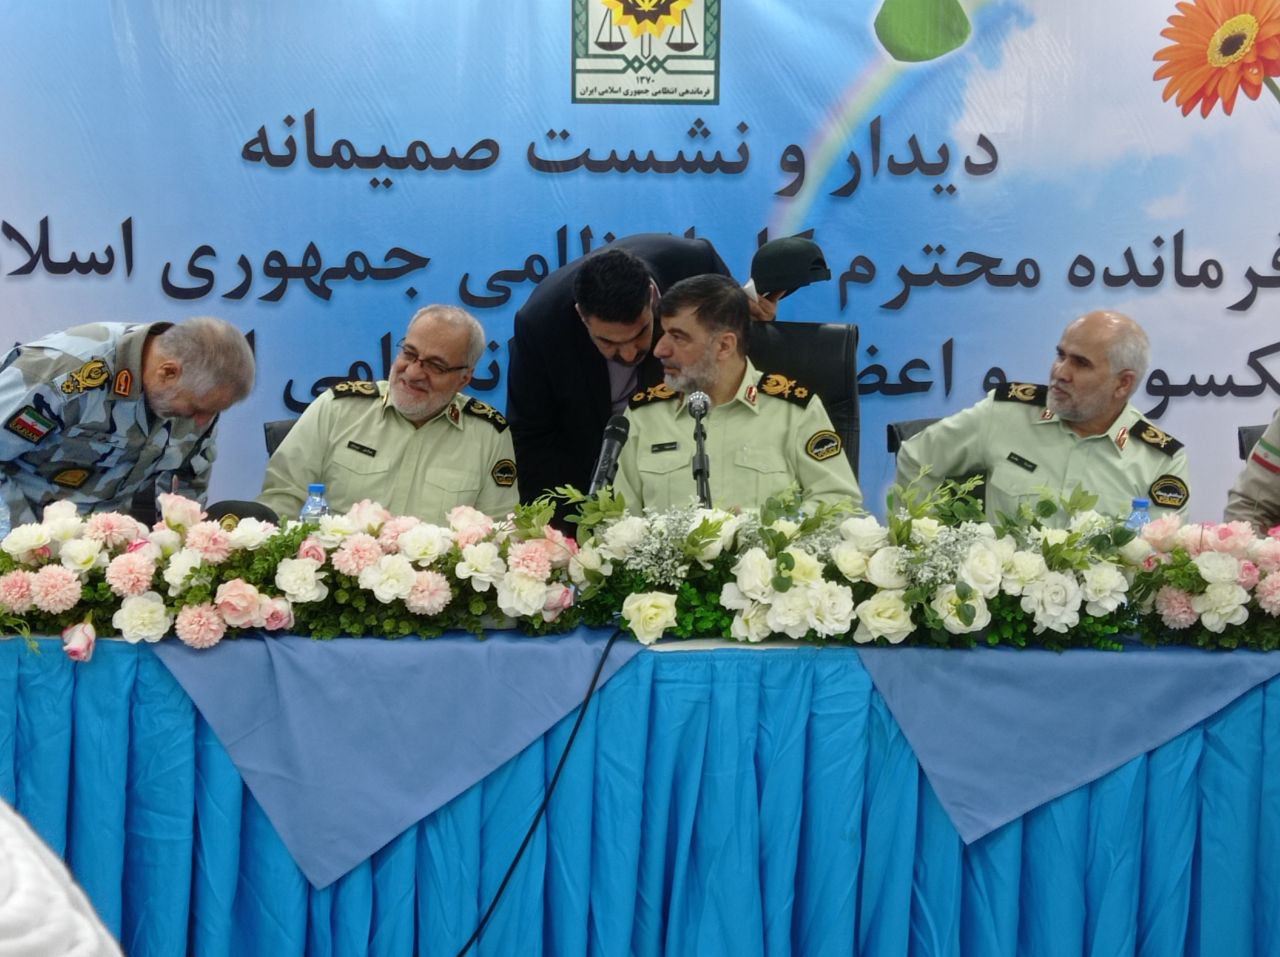 برگزاری نشست صمیمی فرمانده کل انتظامی جمهوری اسلامی ایران با تعدادی از پیشکسوتان